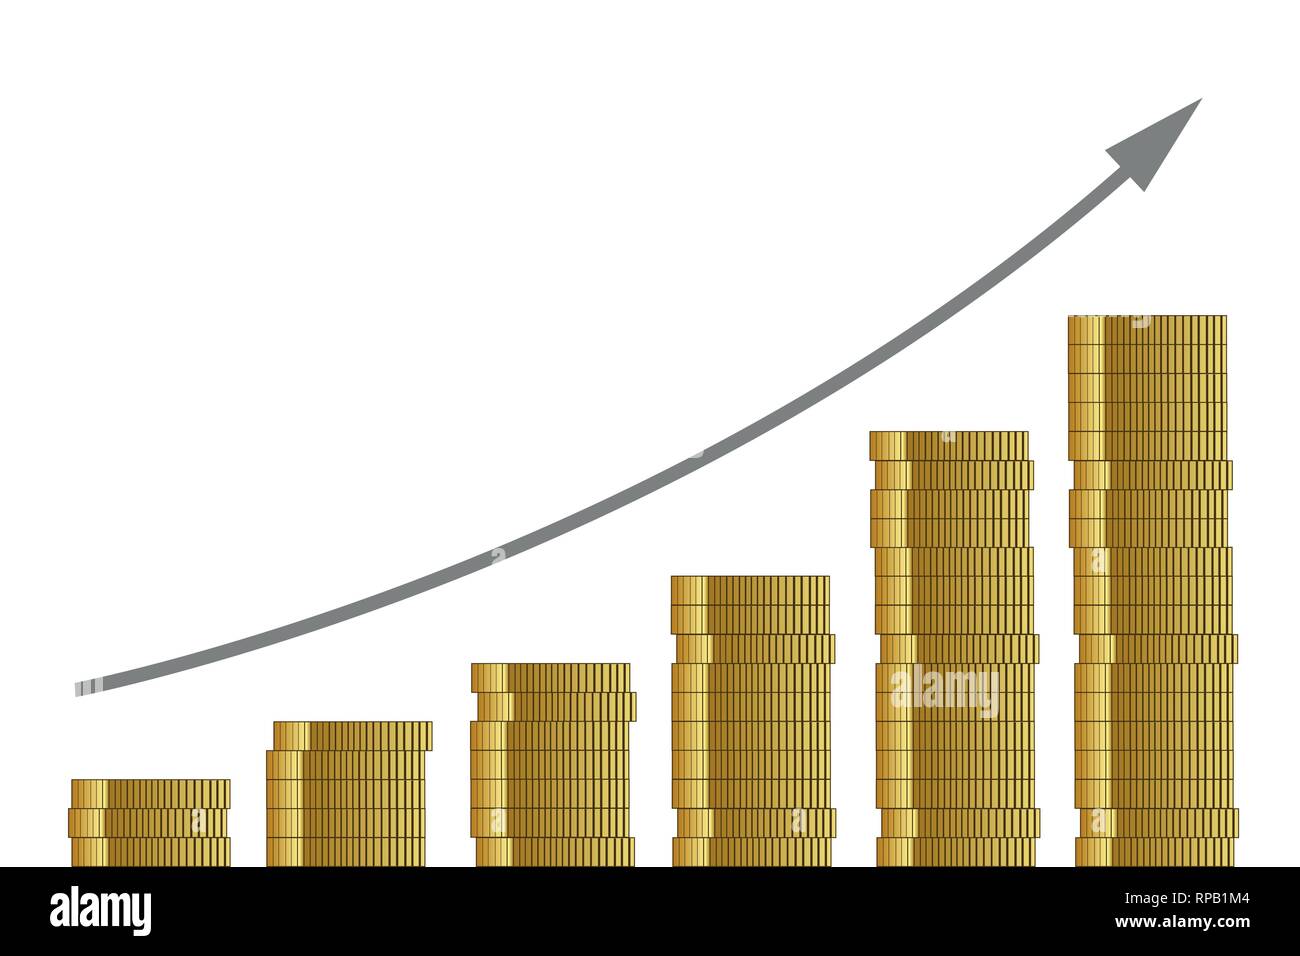 Steigende Kurs viele goldene Münzen auf weißem Hintergrund Finanzen konzept Vektor-illustration EPS 10. Stock Vektor